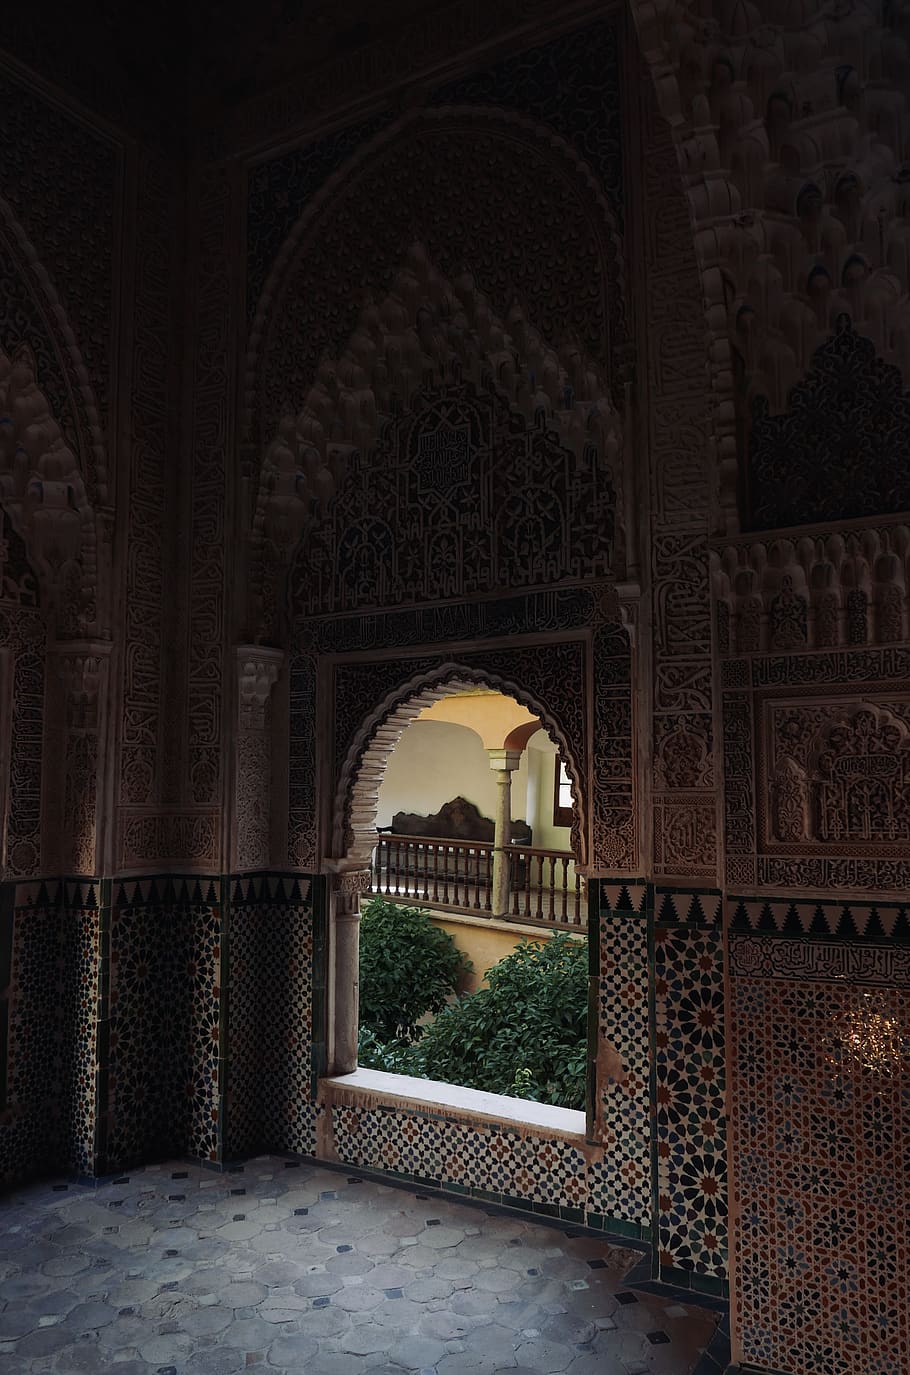 spain, granada, alhambra, castle, window, arabic, arch, architecture